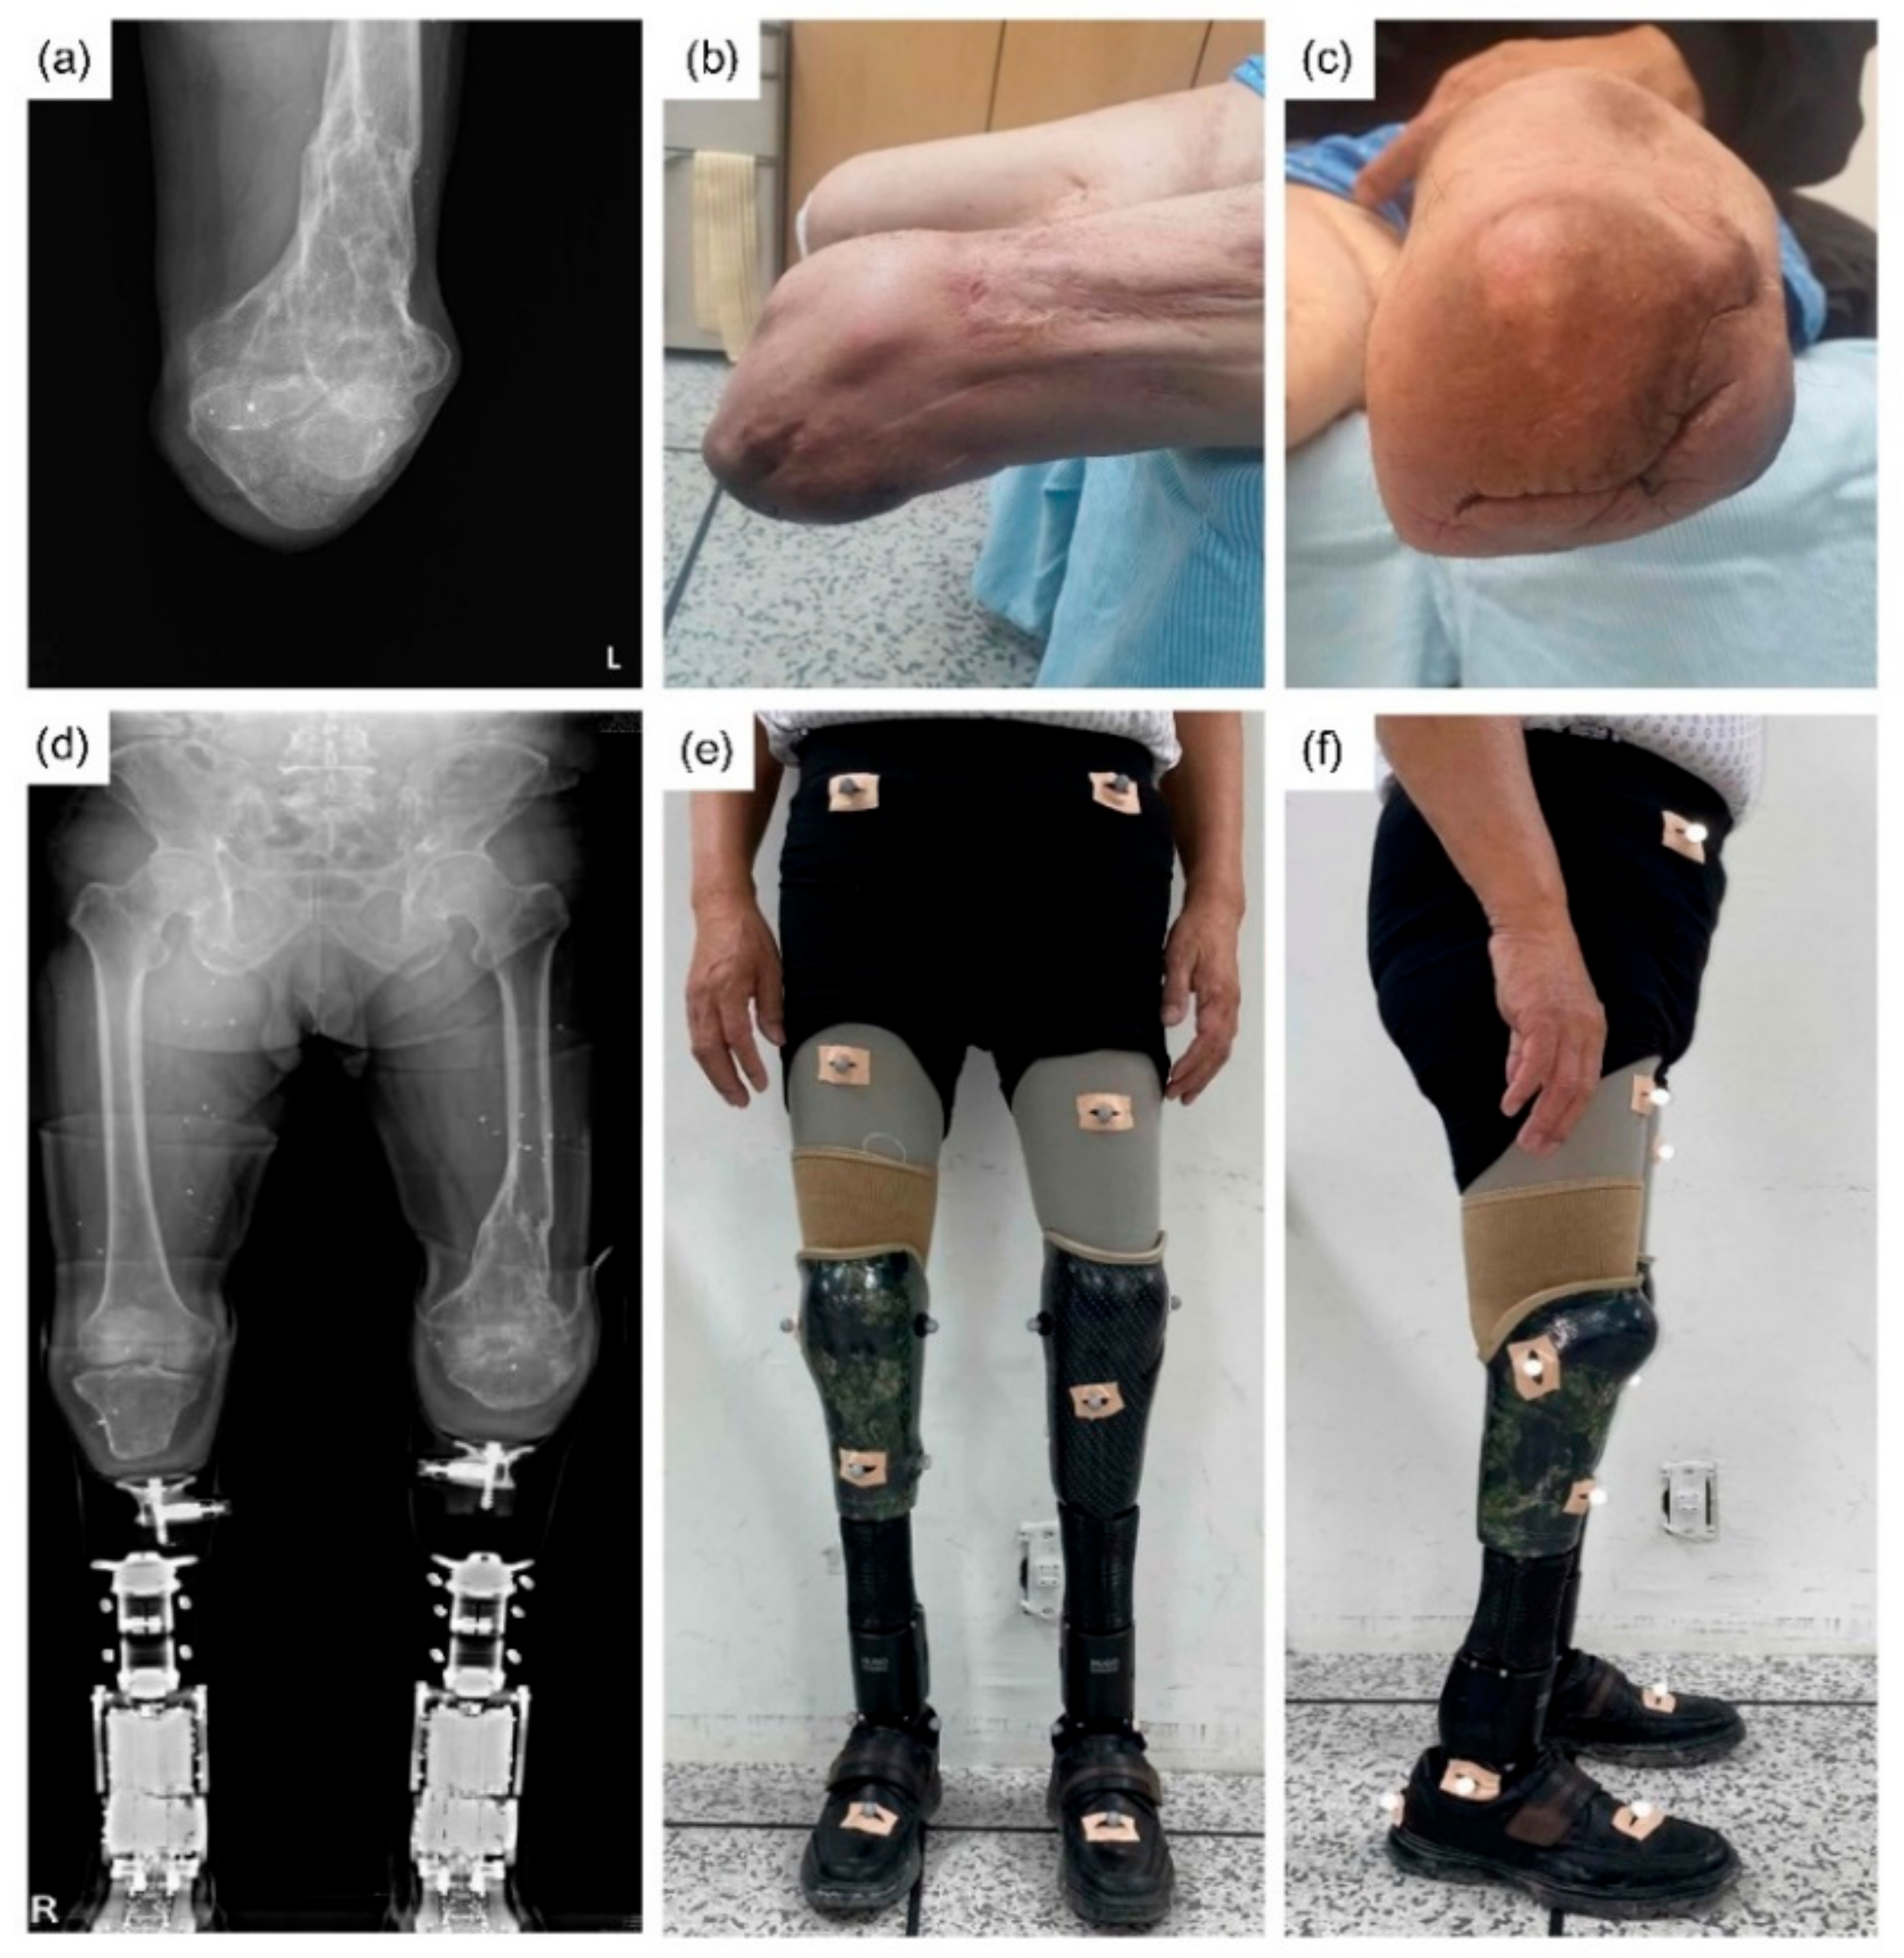 Orthotics and prosthetics - ORTHOTICS and PROSTHETICS